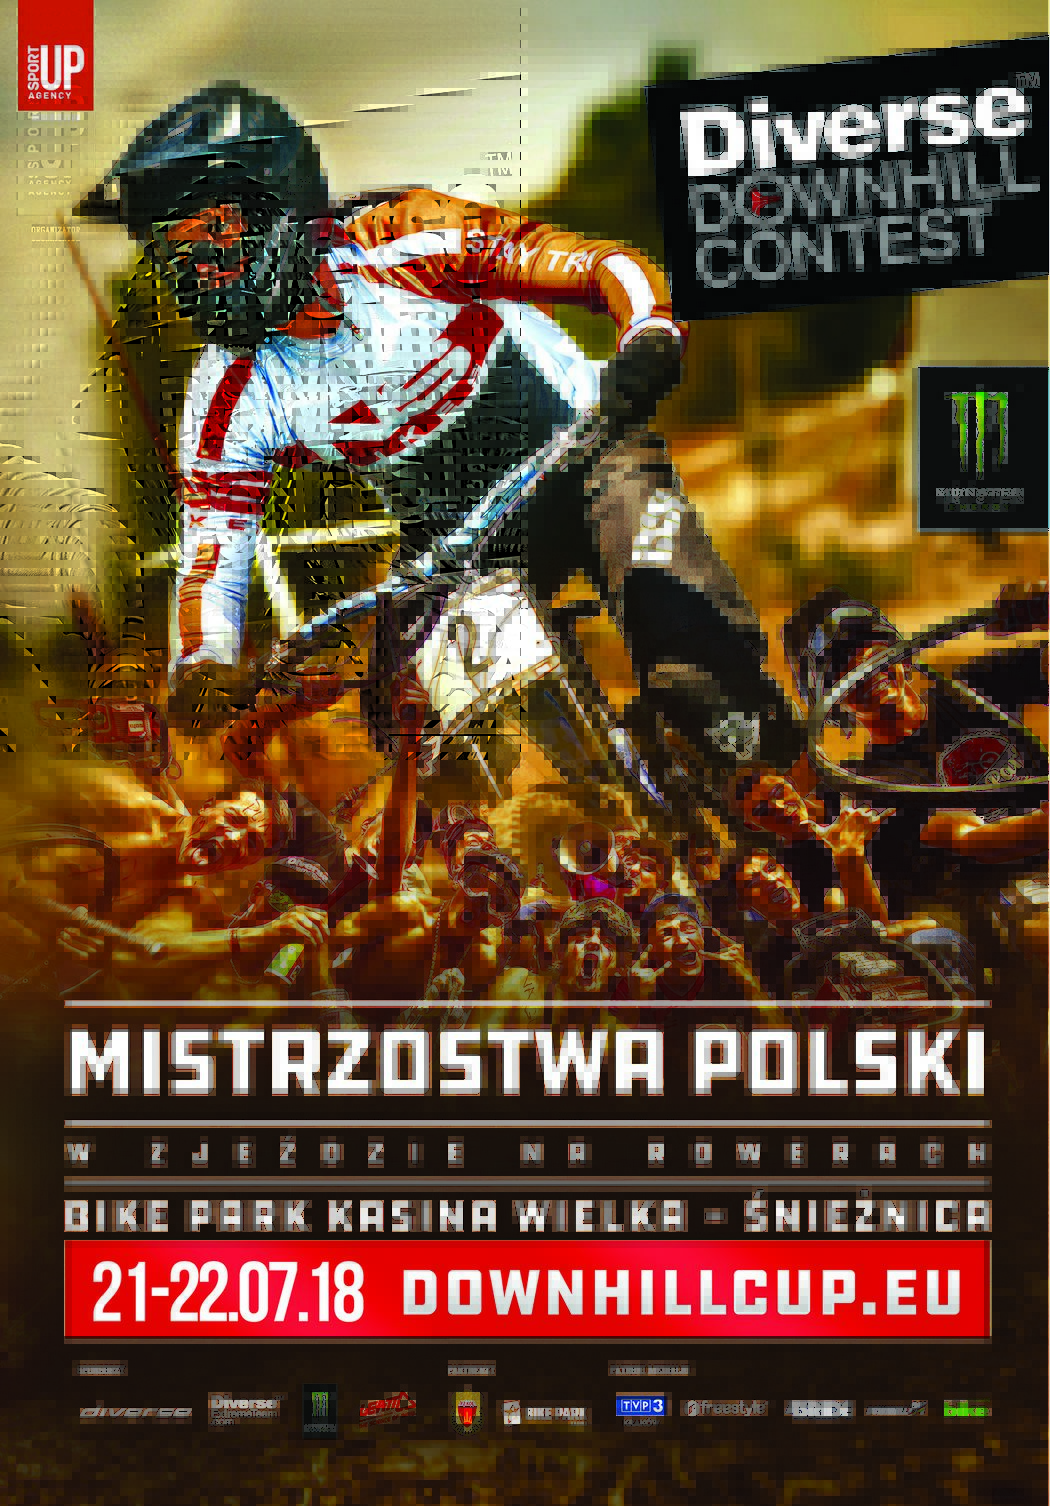 Mistrzostwa Polski Diverse Downhill Contest 2018 - helmet camy tras